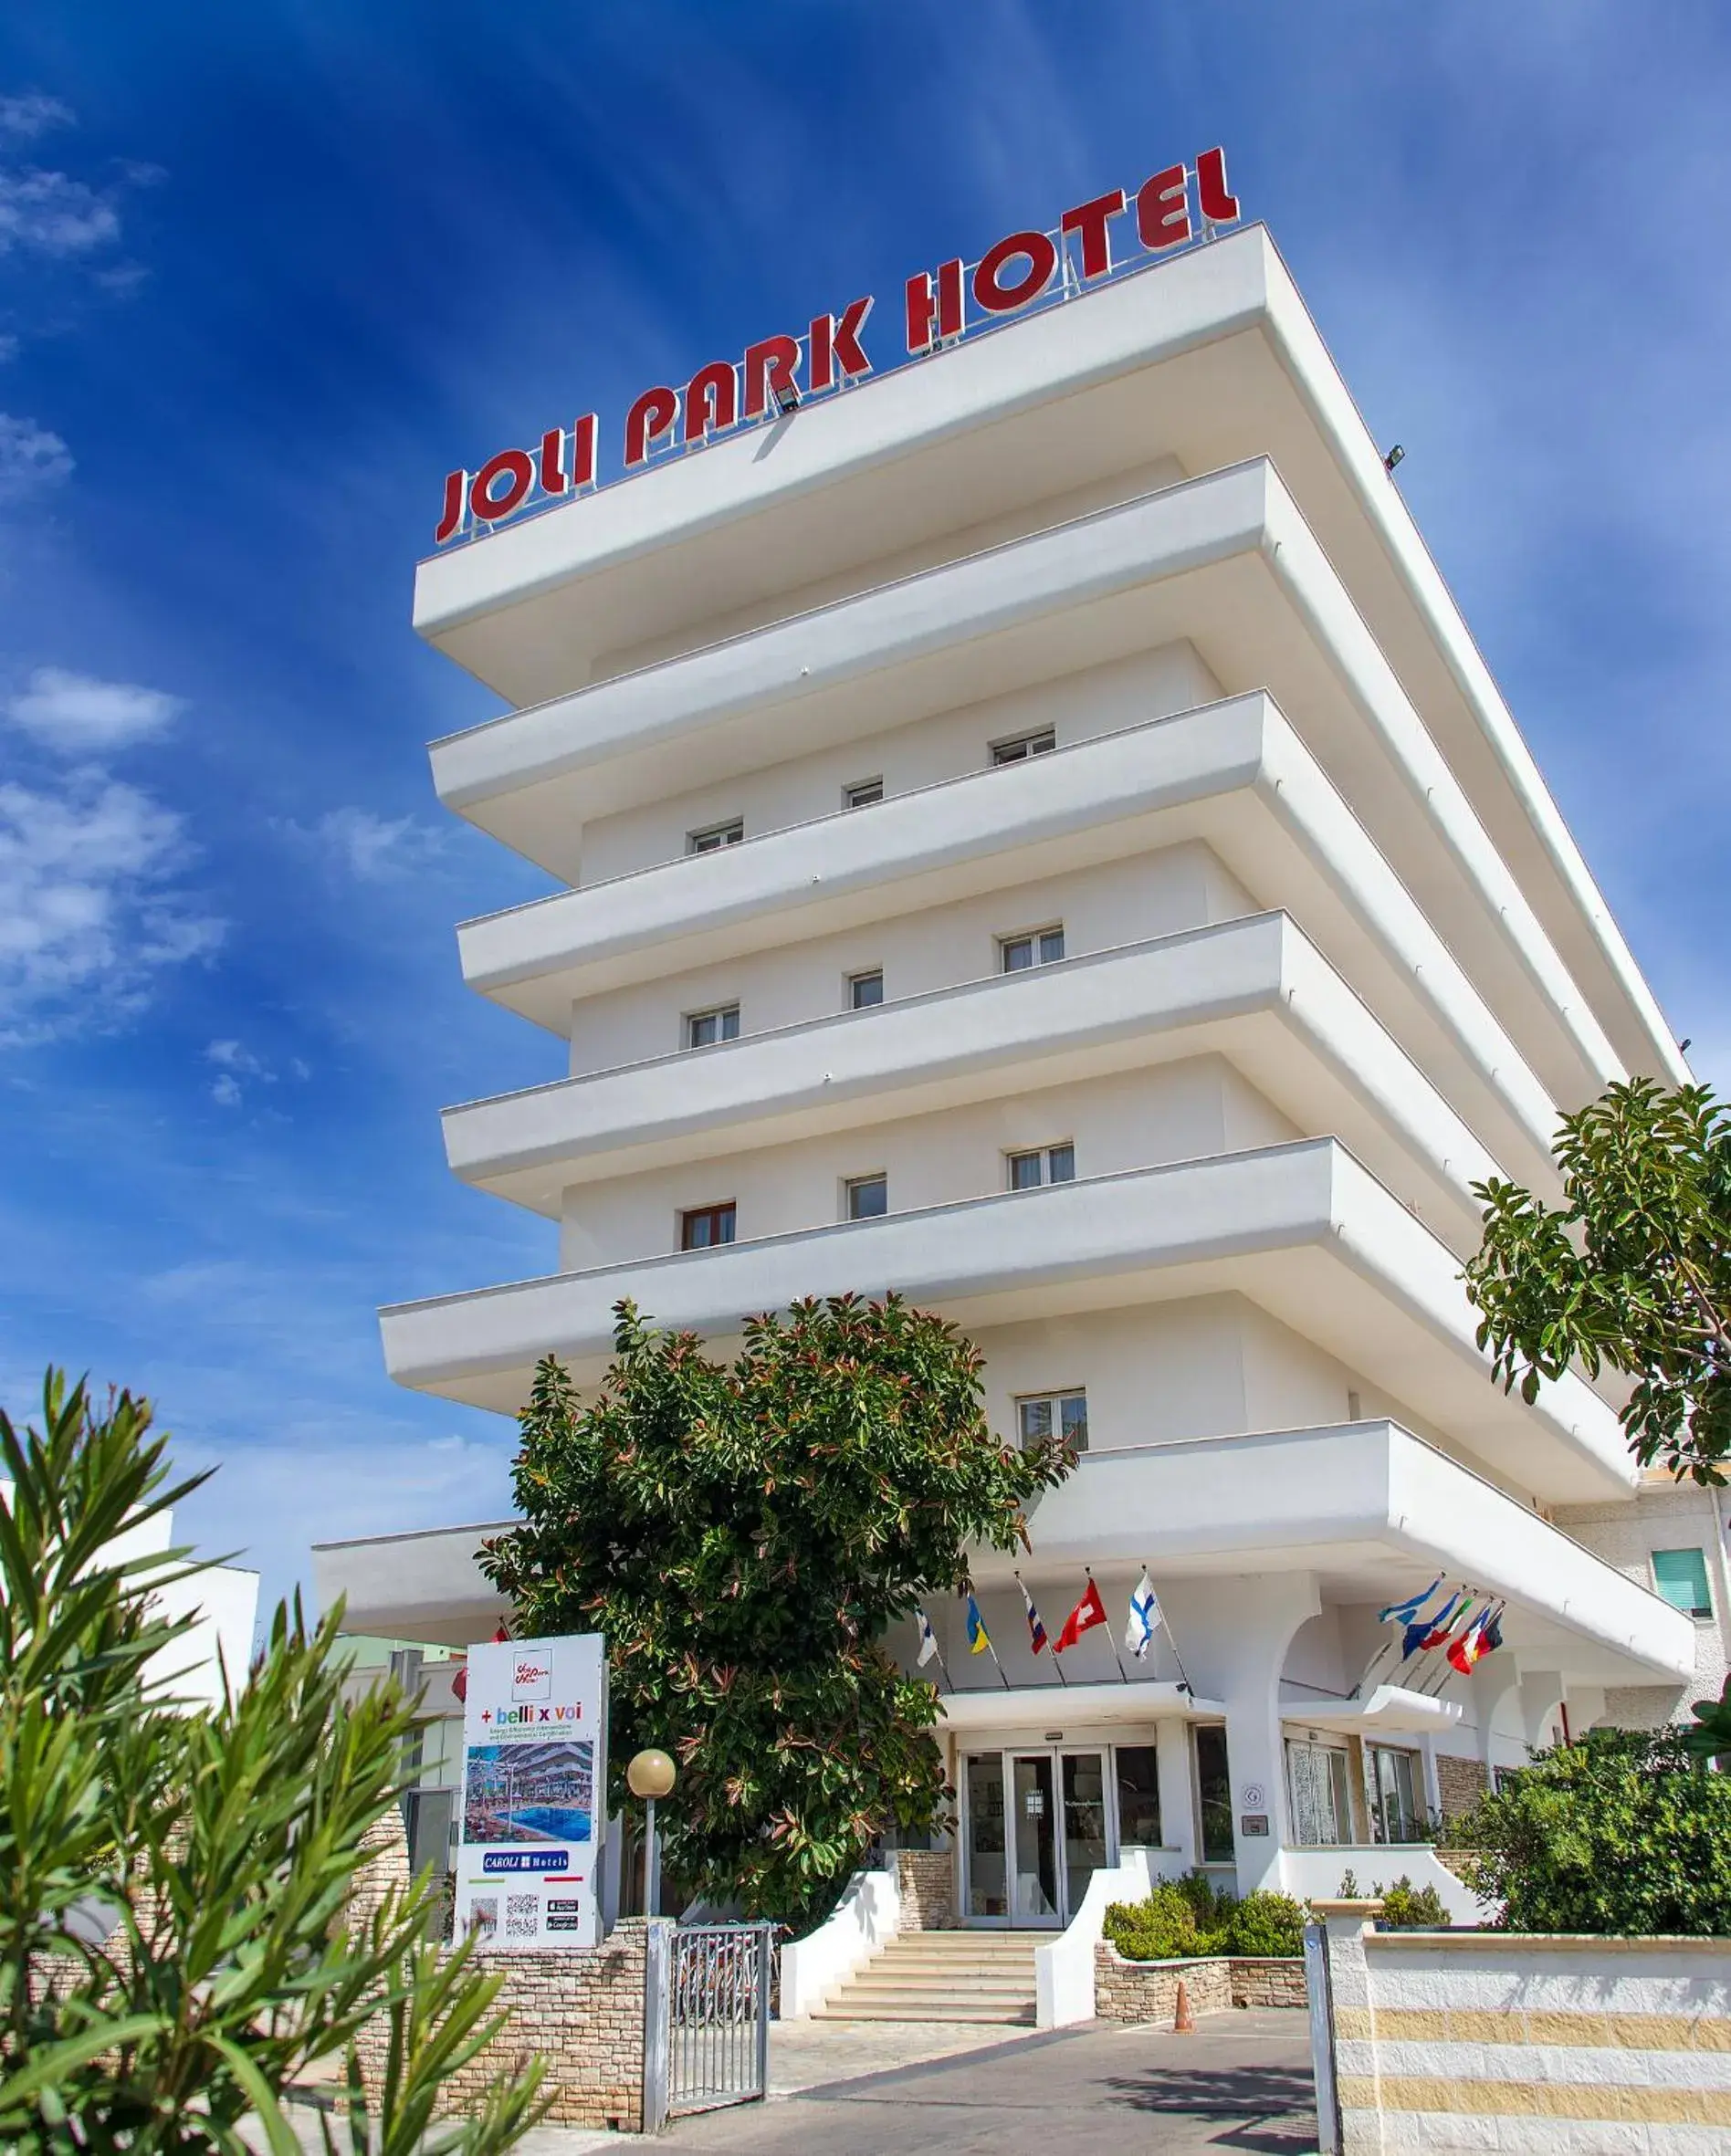 Property Building in Joli Park Hotel - Caroli Hotels